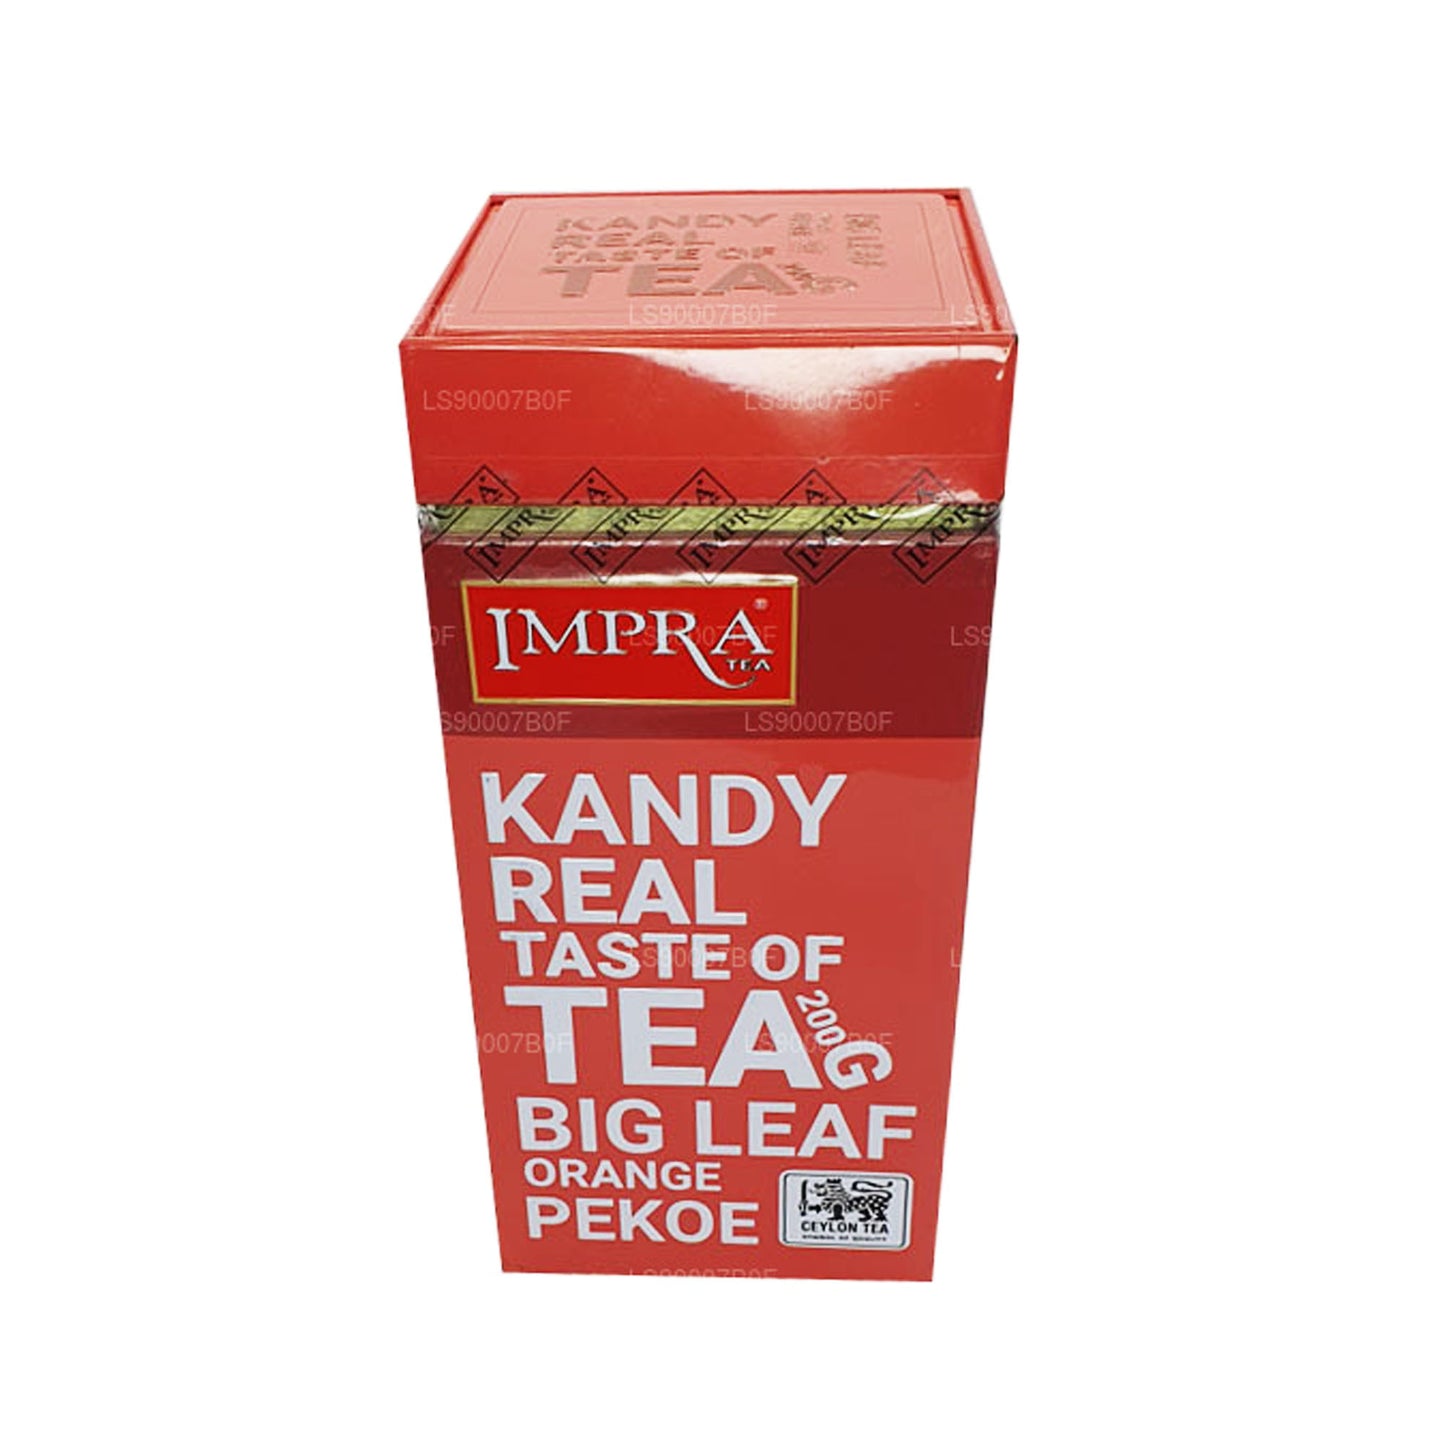 Impra Kandy smak av te Big Leaf Orange Pekoe (200g) Meatal Caddy